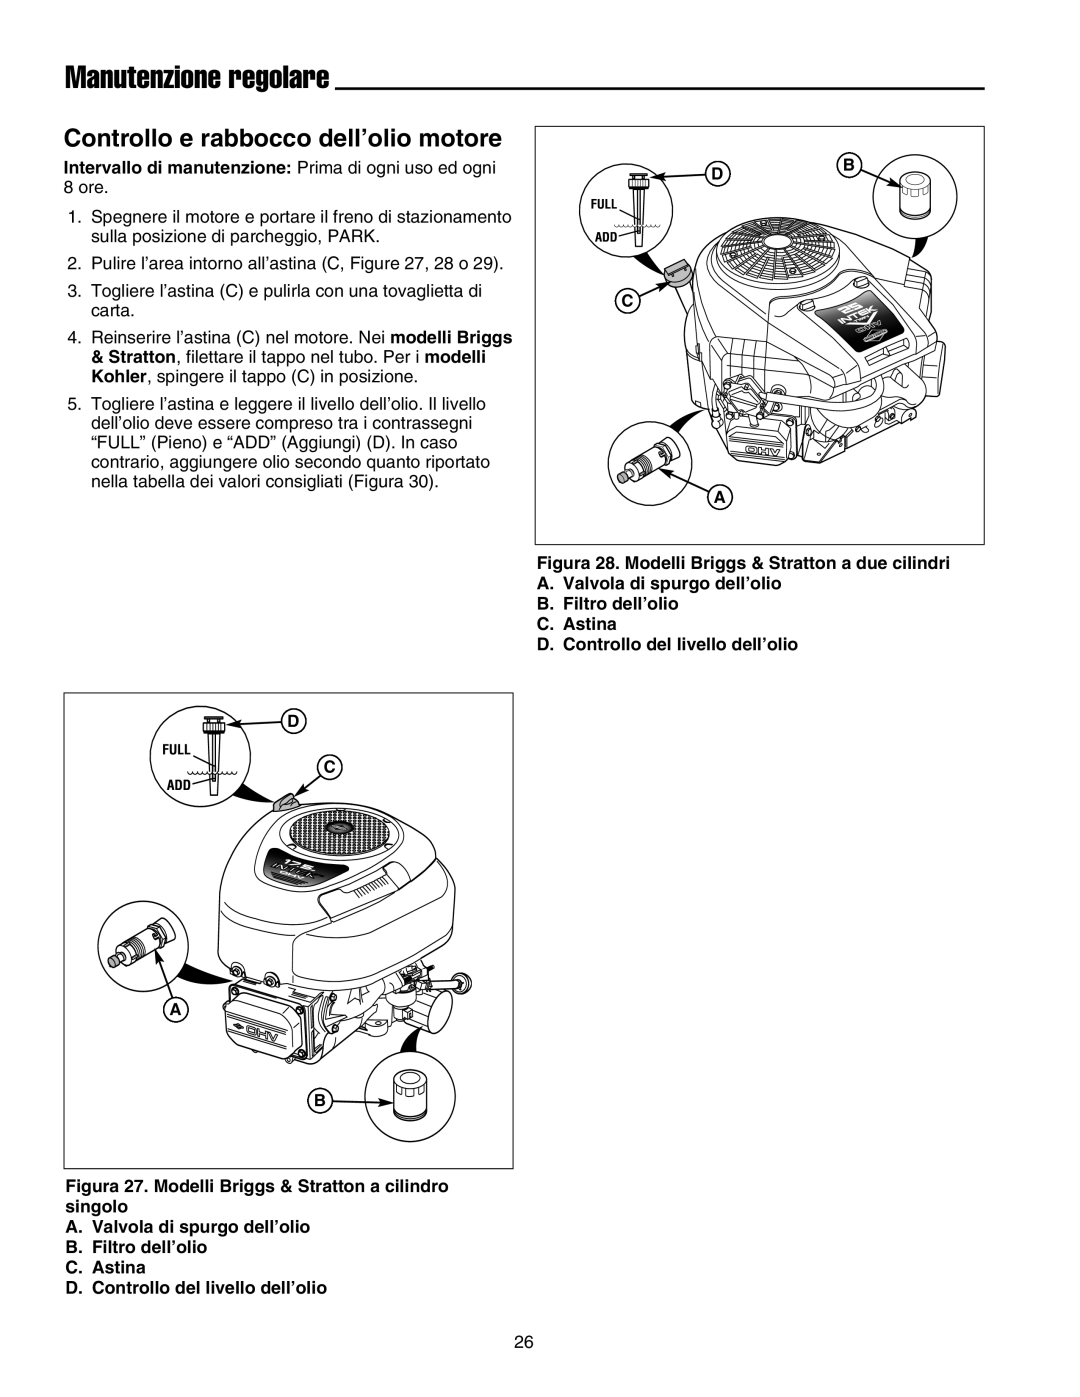 Briggs & Stratton Printer instruction sheet Controllo e rabbocco dell’olio motore, Manutenzione regolare 